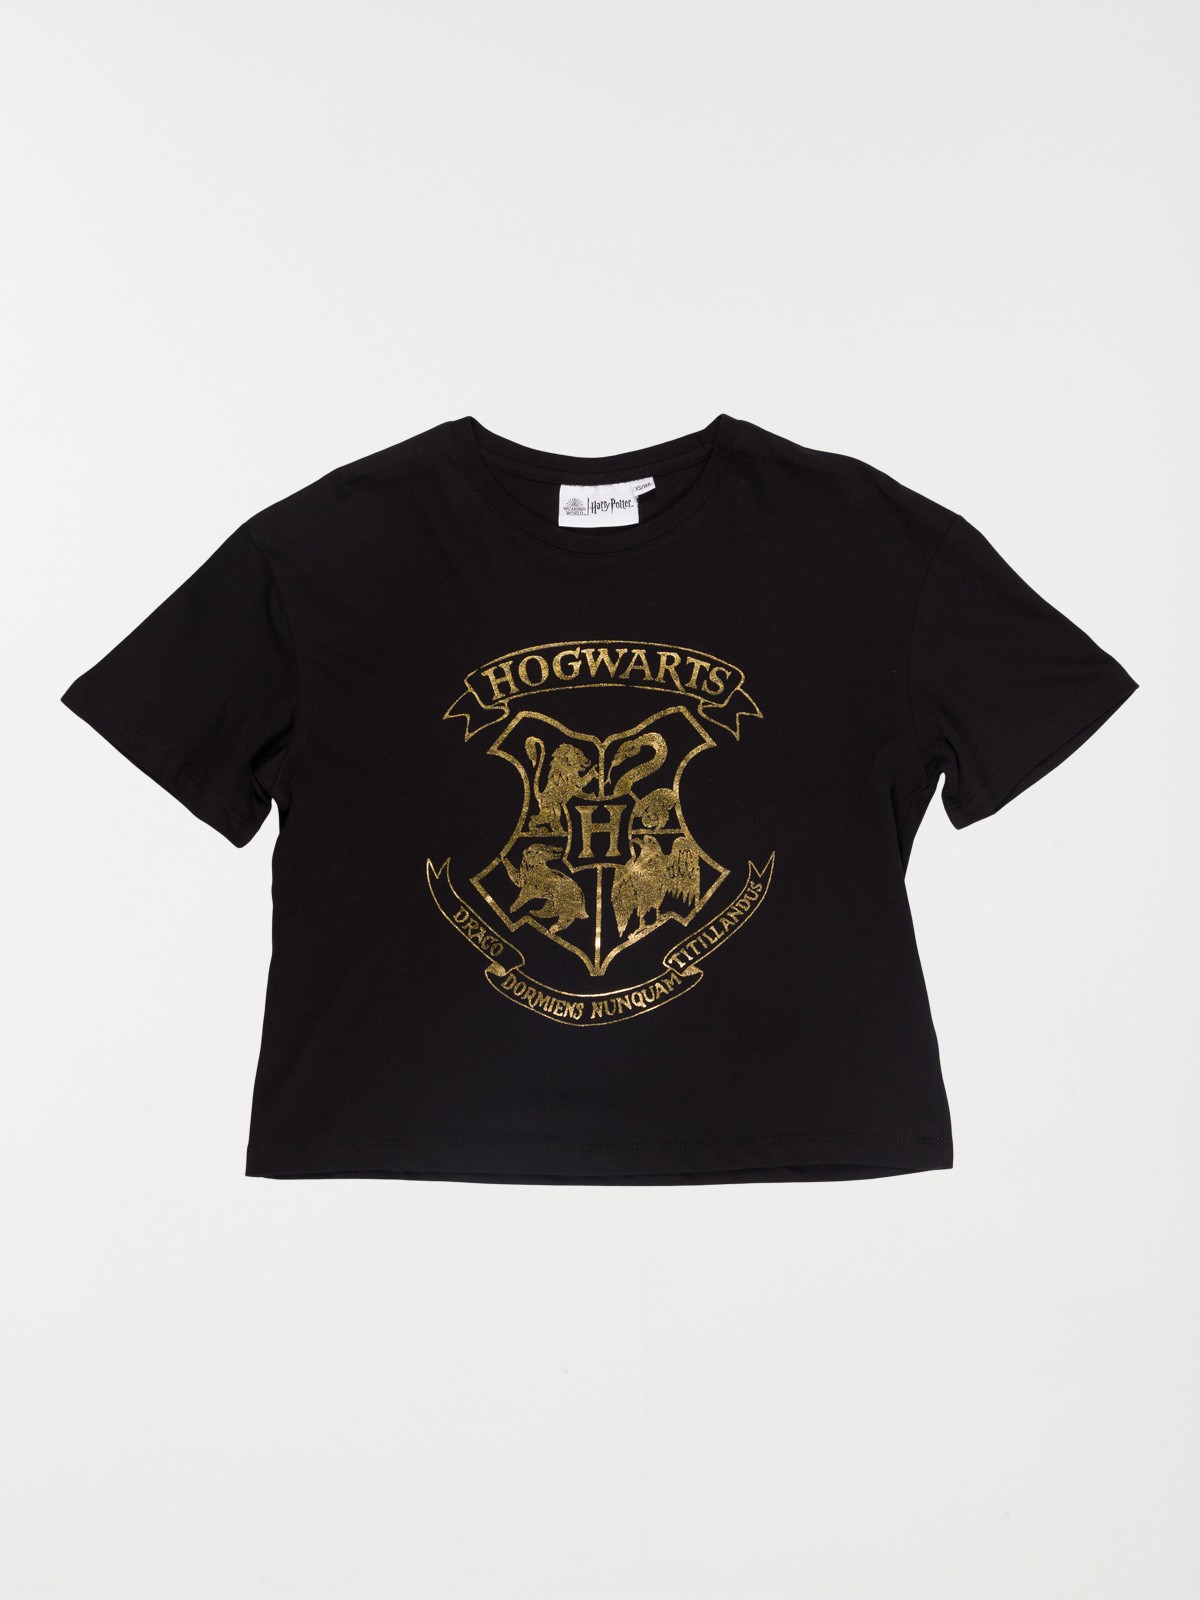 Tee-shirt Harry Potter fille (XXS-M) - DistriCenter